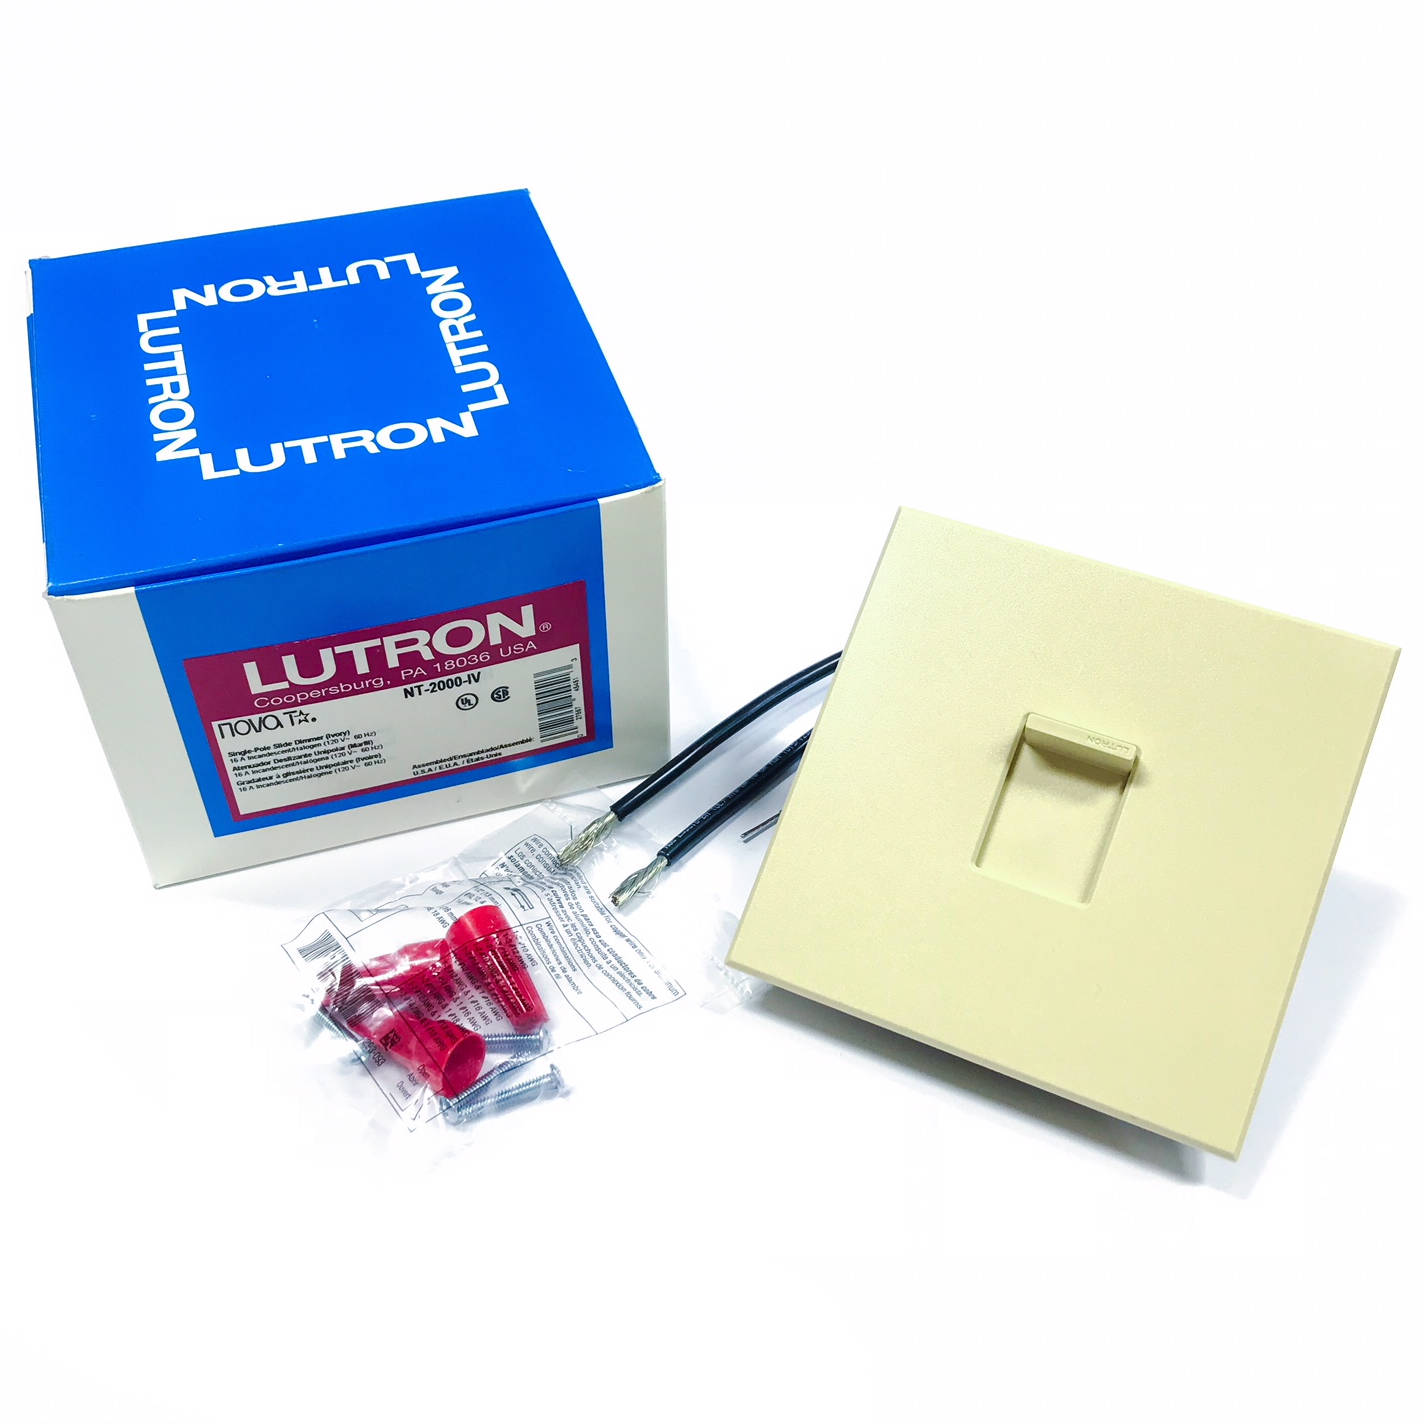 NT-2000-IV Lutron Slide Dimmer, Incandescent 1